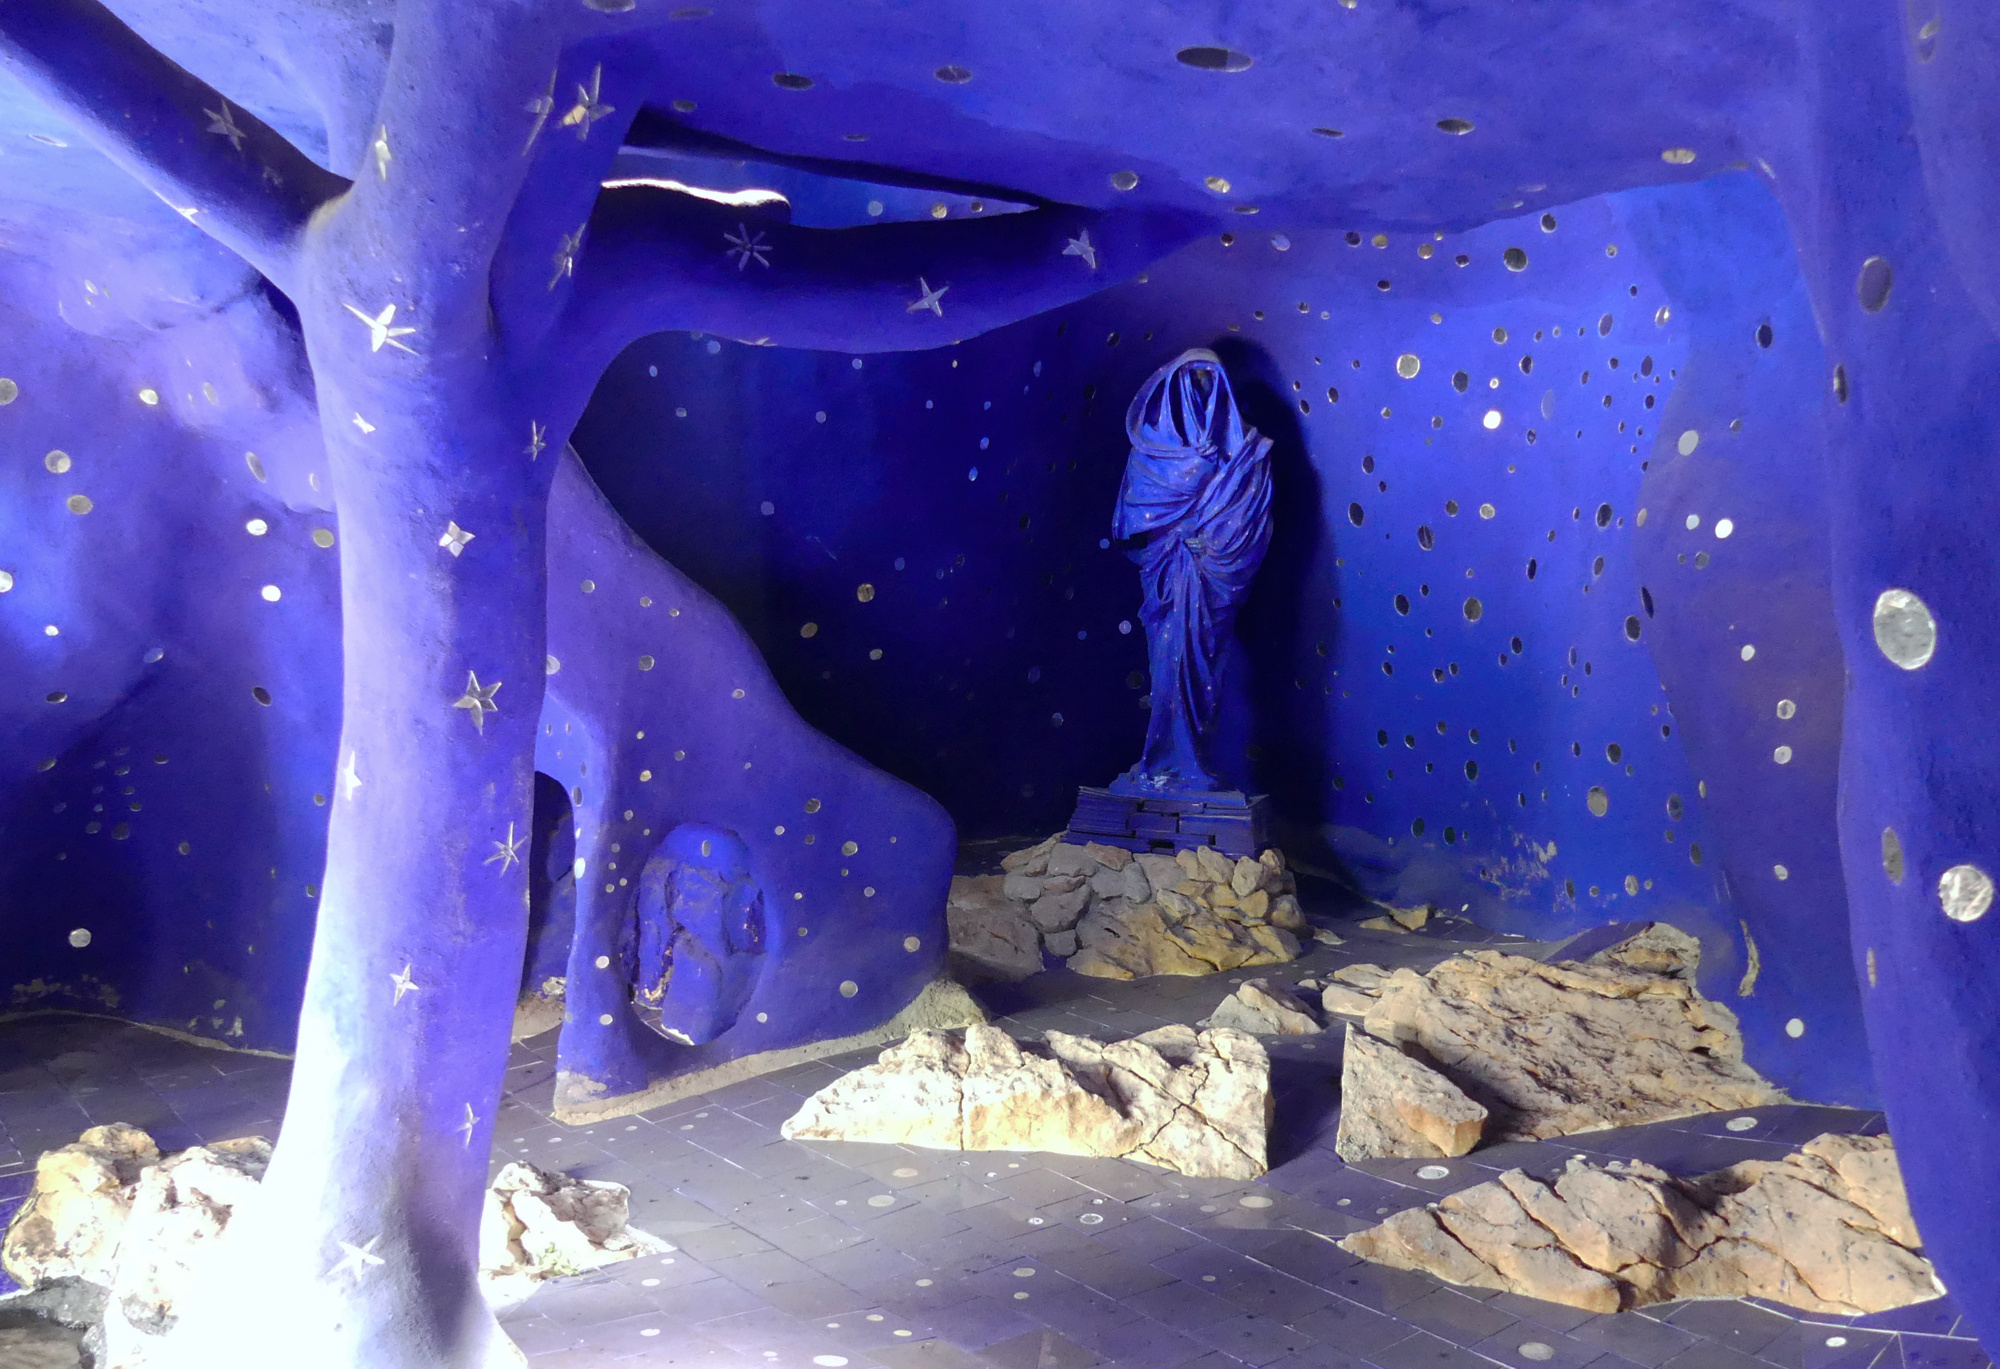 tarot-garden-the-high-priestess-grotto.jpg